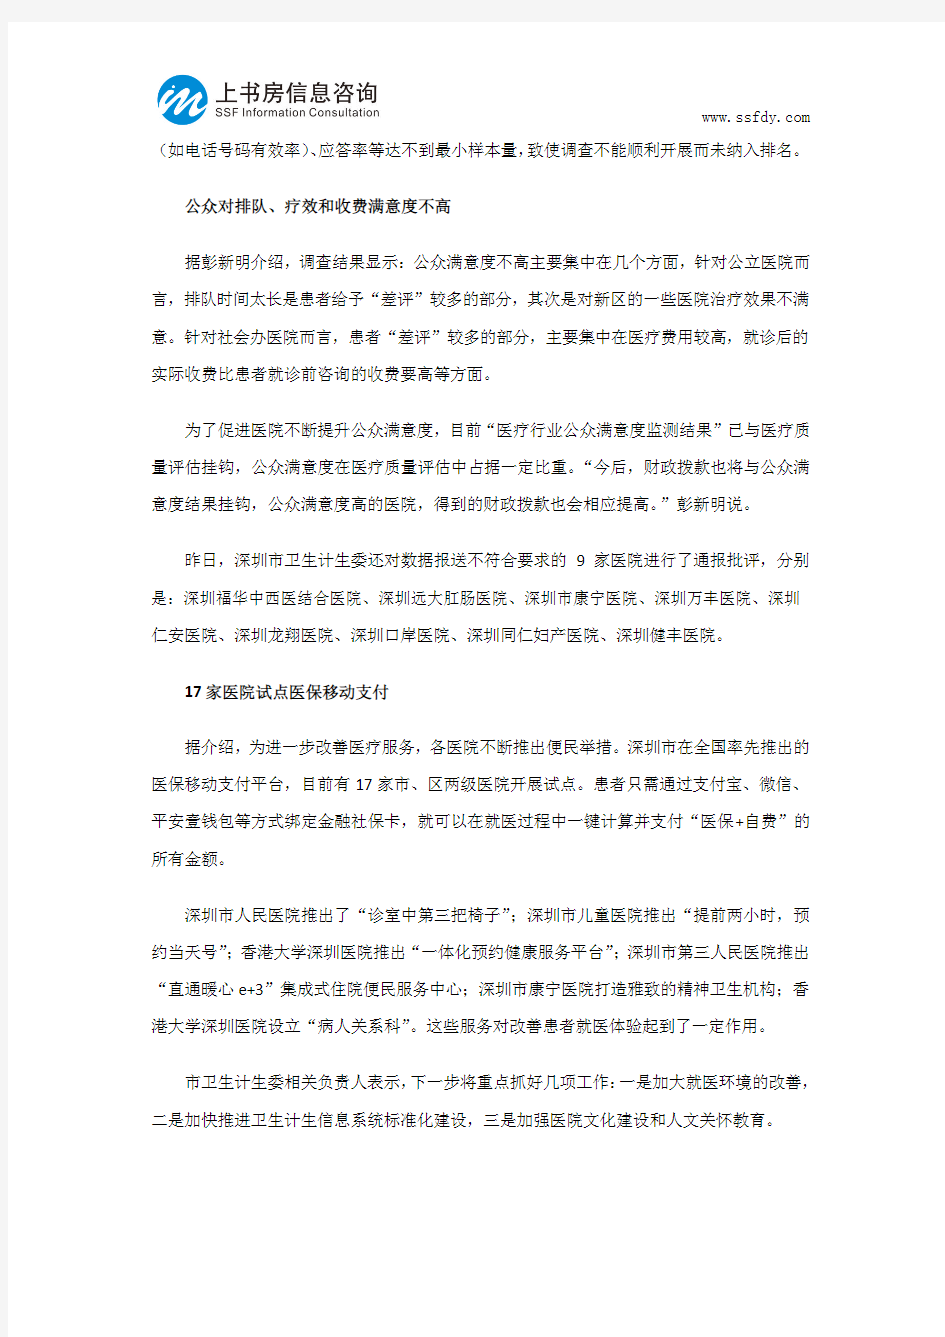 深圳市医院满意度调查分析-上书房信息咨询